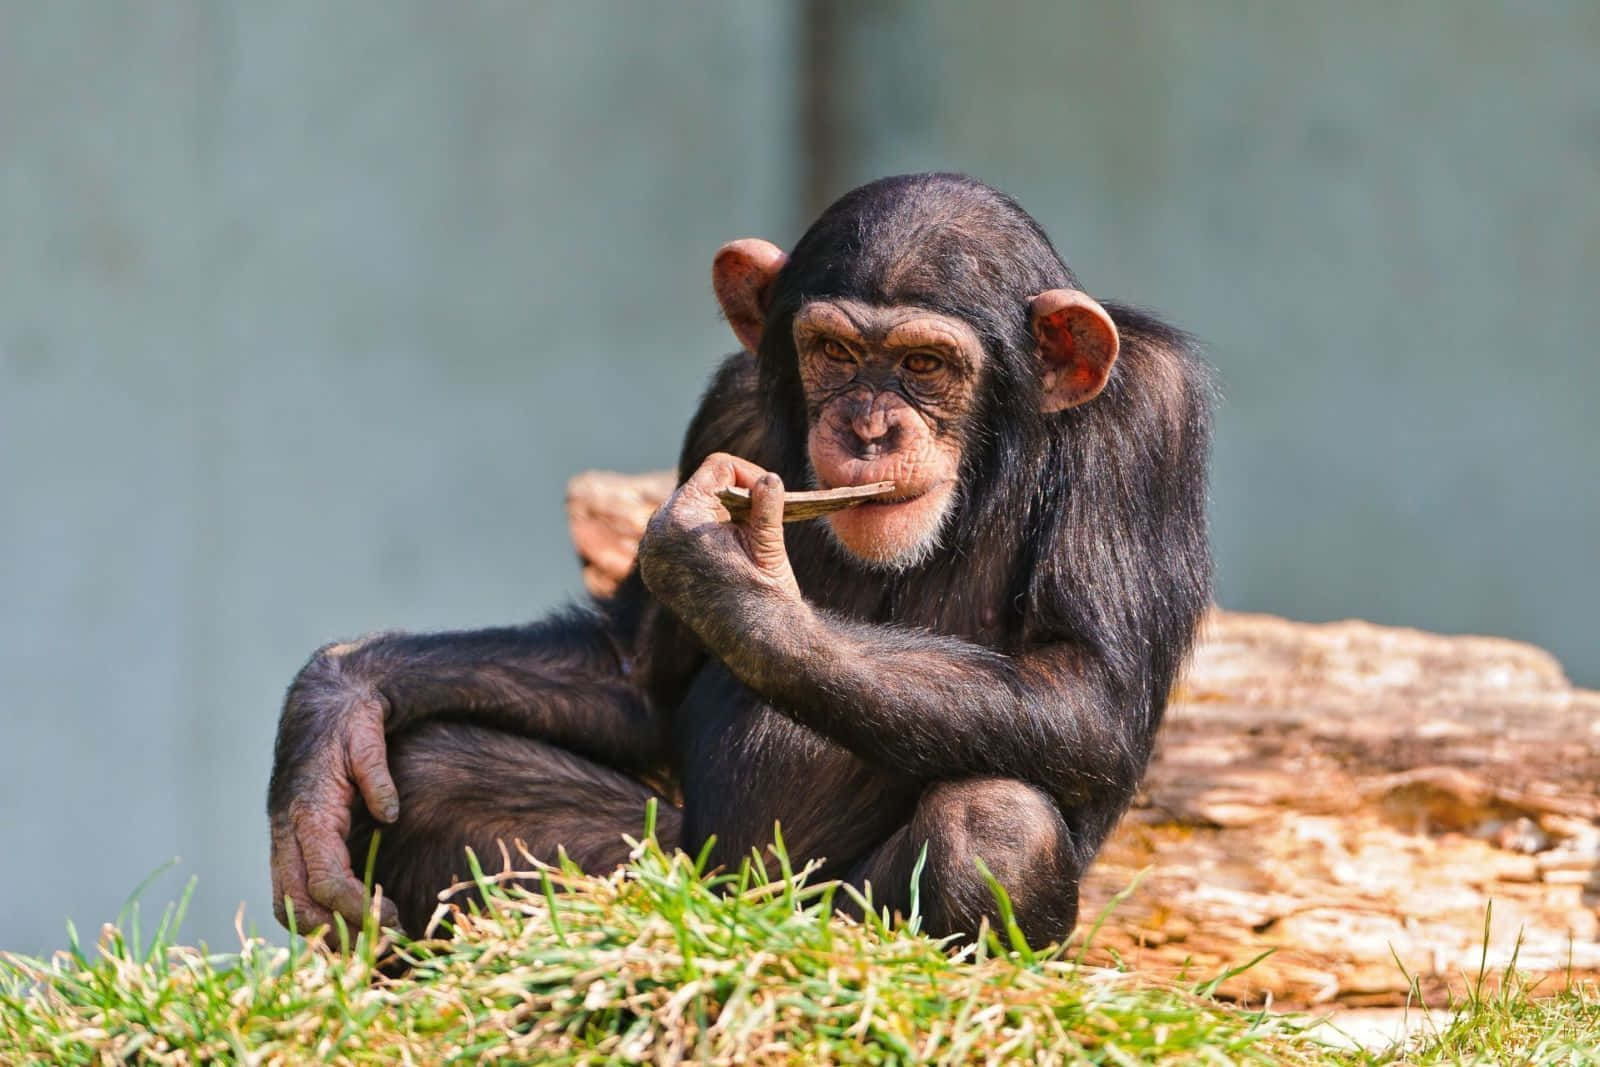 A playful chimpanzee enjoying the day